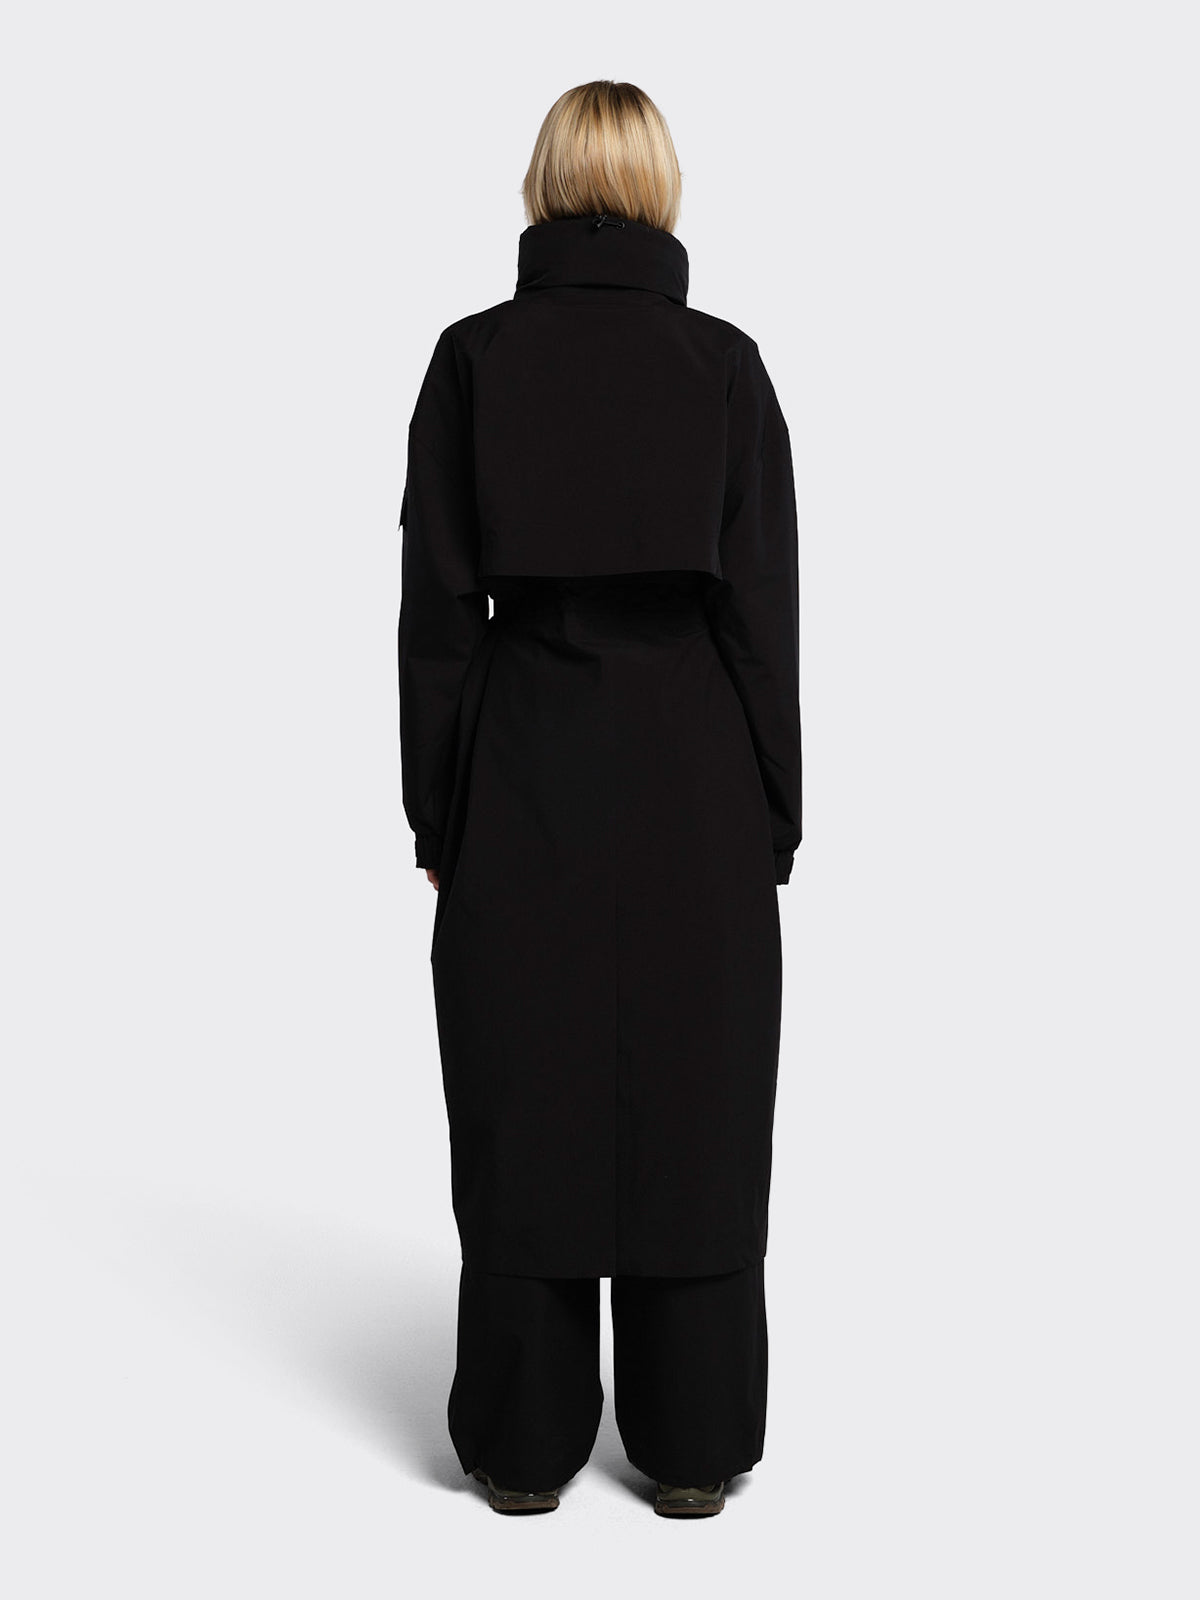 Woman dressed in Klipra coat from Blæst in Black